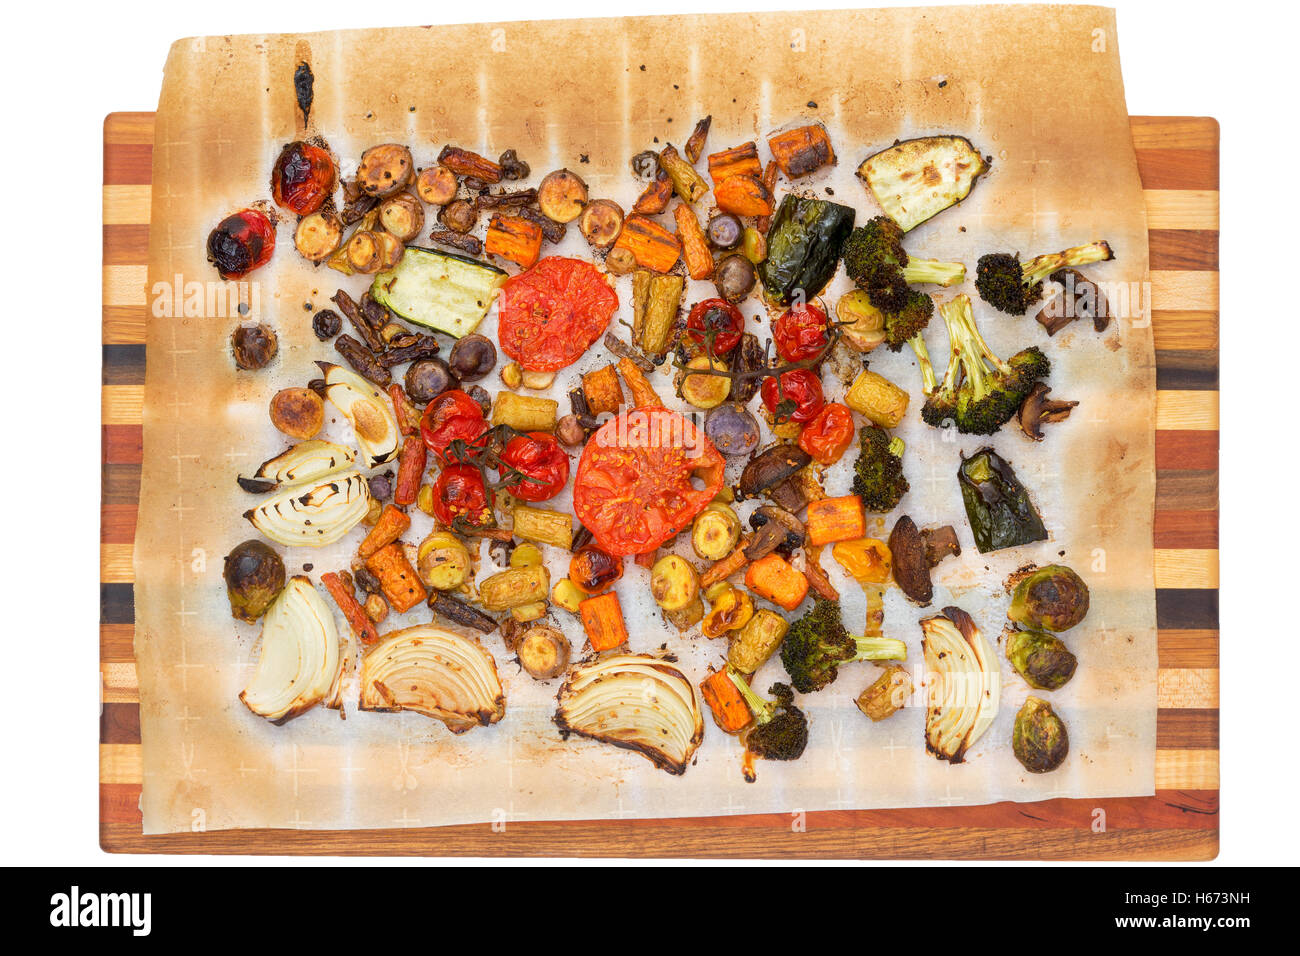 Vista dall'alto in basso di recente alla griglia o arrosto di pomodori, broccoli, squash, carote, funghi, i cavoletti di Bruxelles e peperoni su t Foto Stock